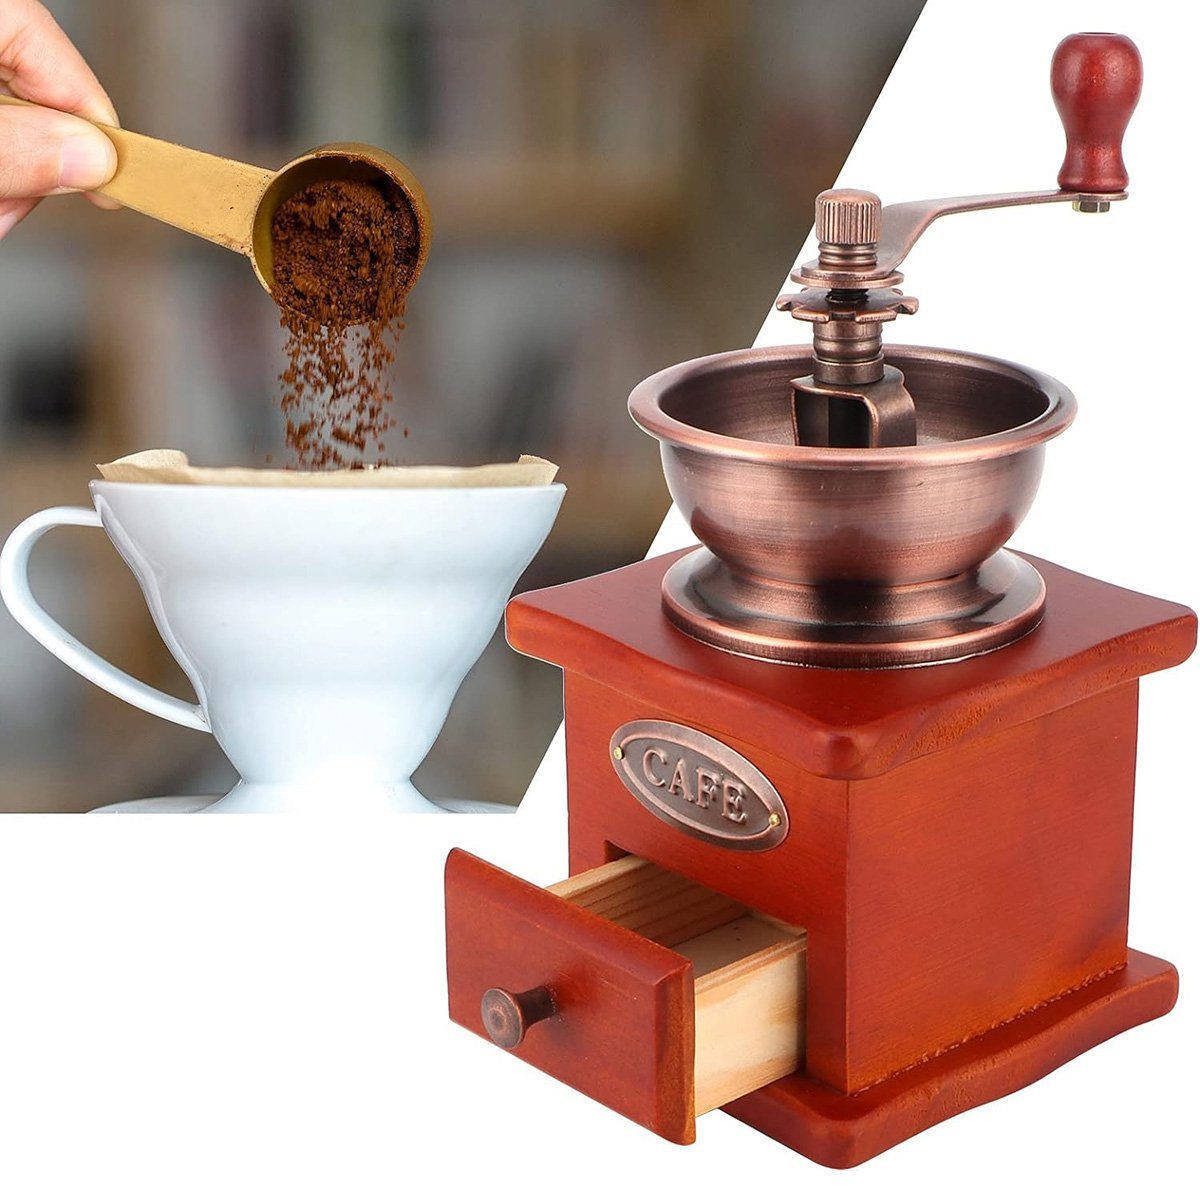 yozhiqu Kaffeemühle Kleine Handkurbel-Kaffeemühle Mahlwerk Bohnenmaschine, Retro-Stil, manuell, geeignet für Tropfkaffee-French-Press